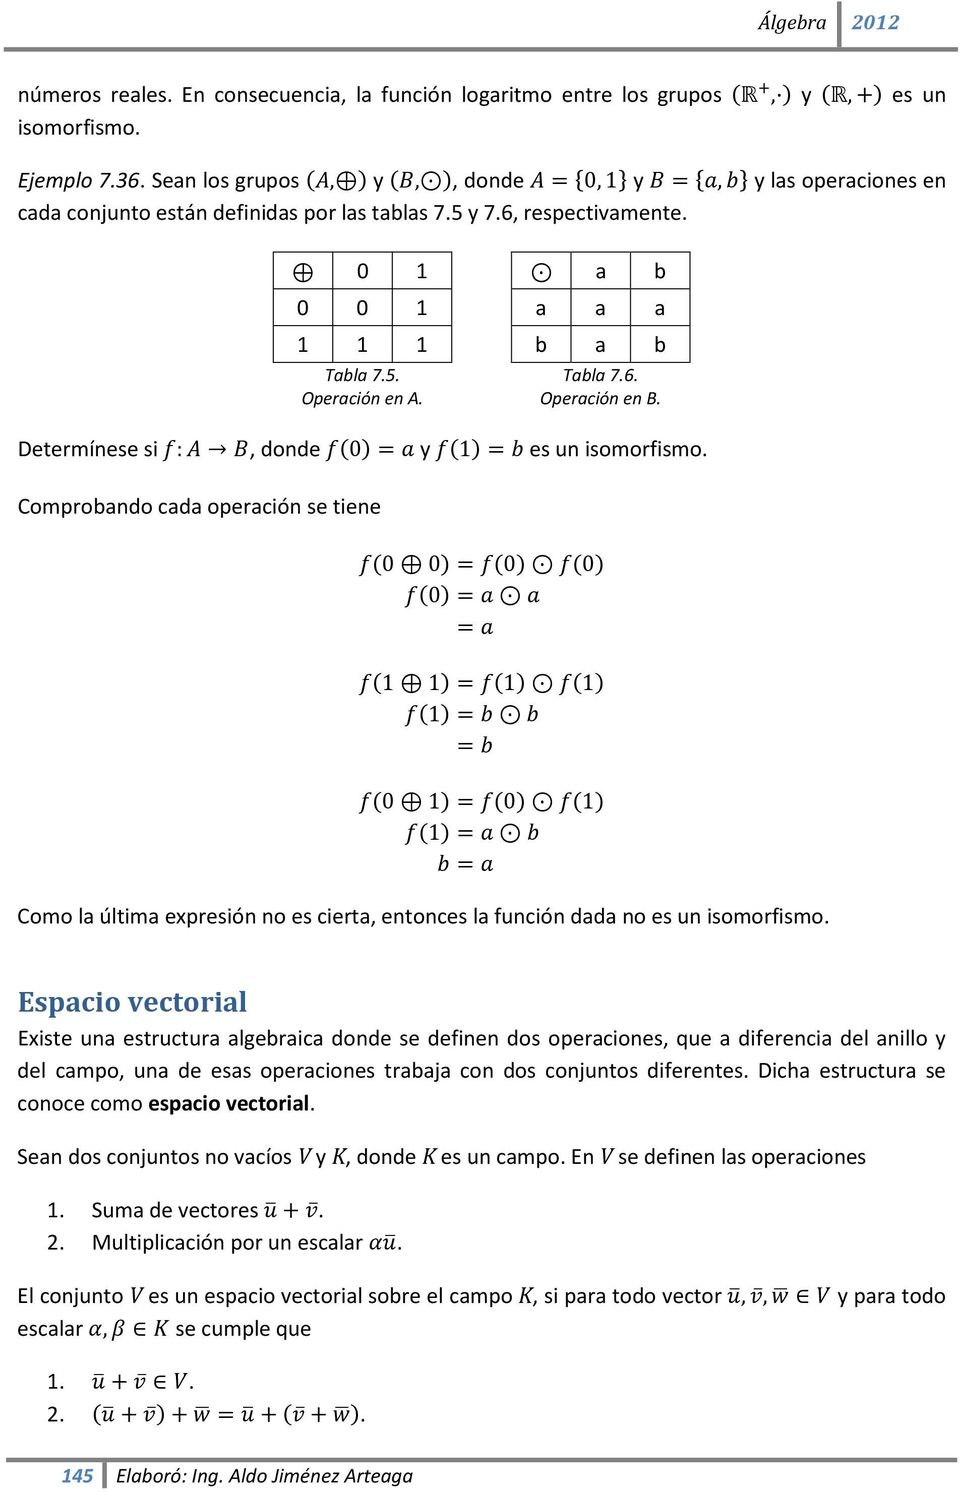 Tabla 7.6. Operación en B. Determínese si f: A B, donde f(0) = a y f(1) = b es un isomorfismo.